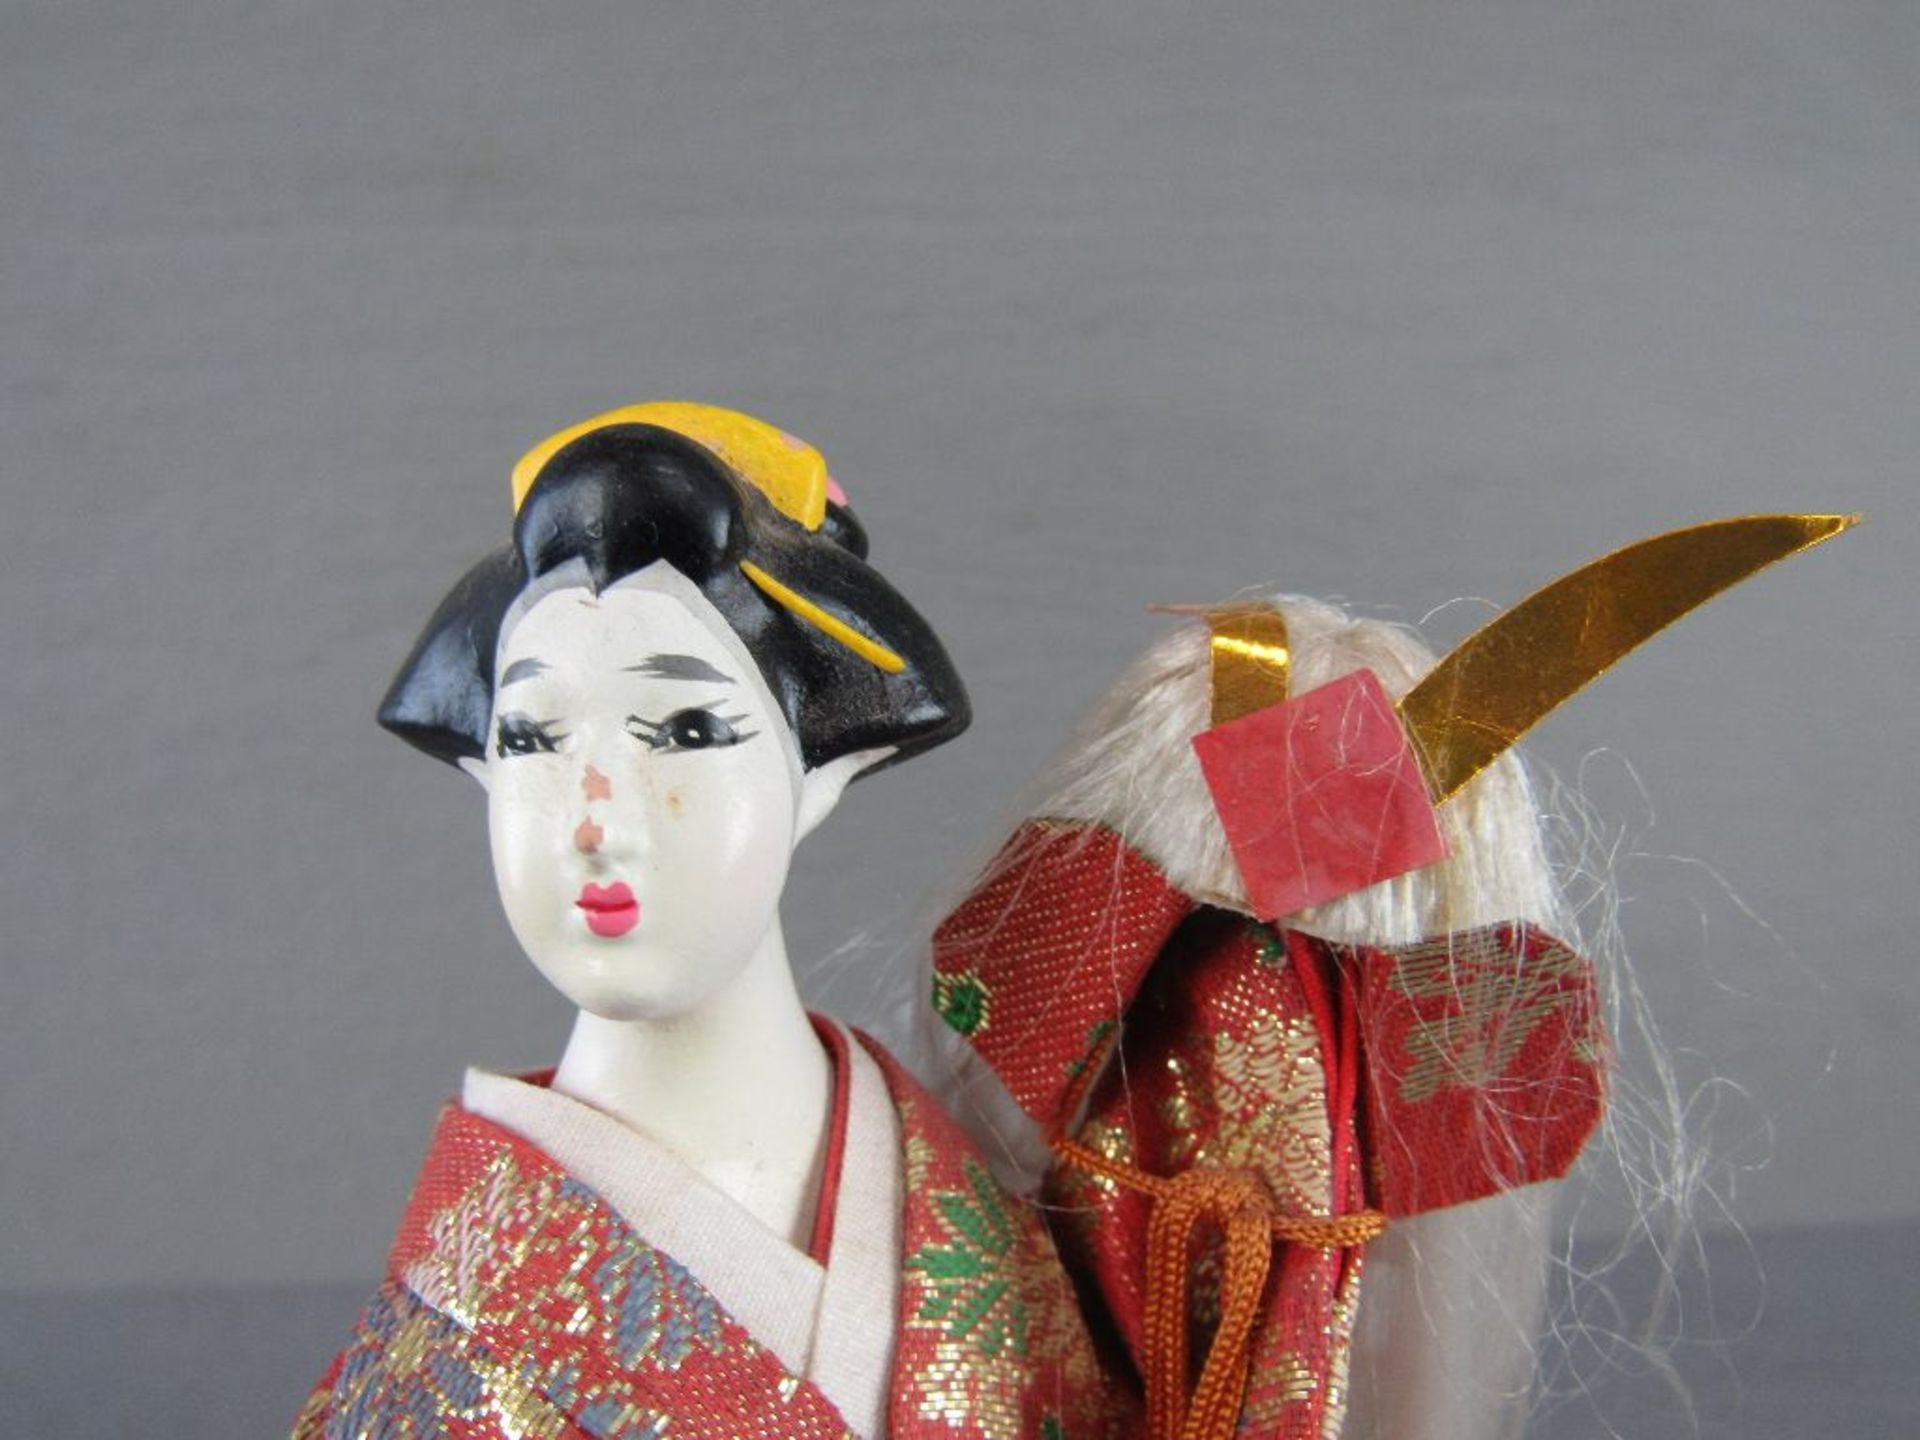 Japanische Frauenskulptur 23cm hoch auf Holzsockel - Bild 2 aus 4